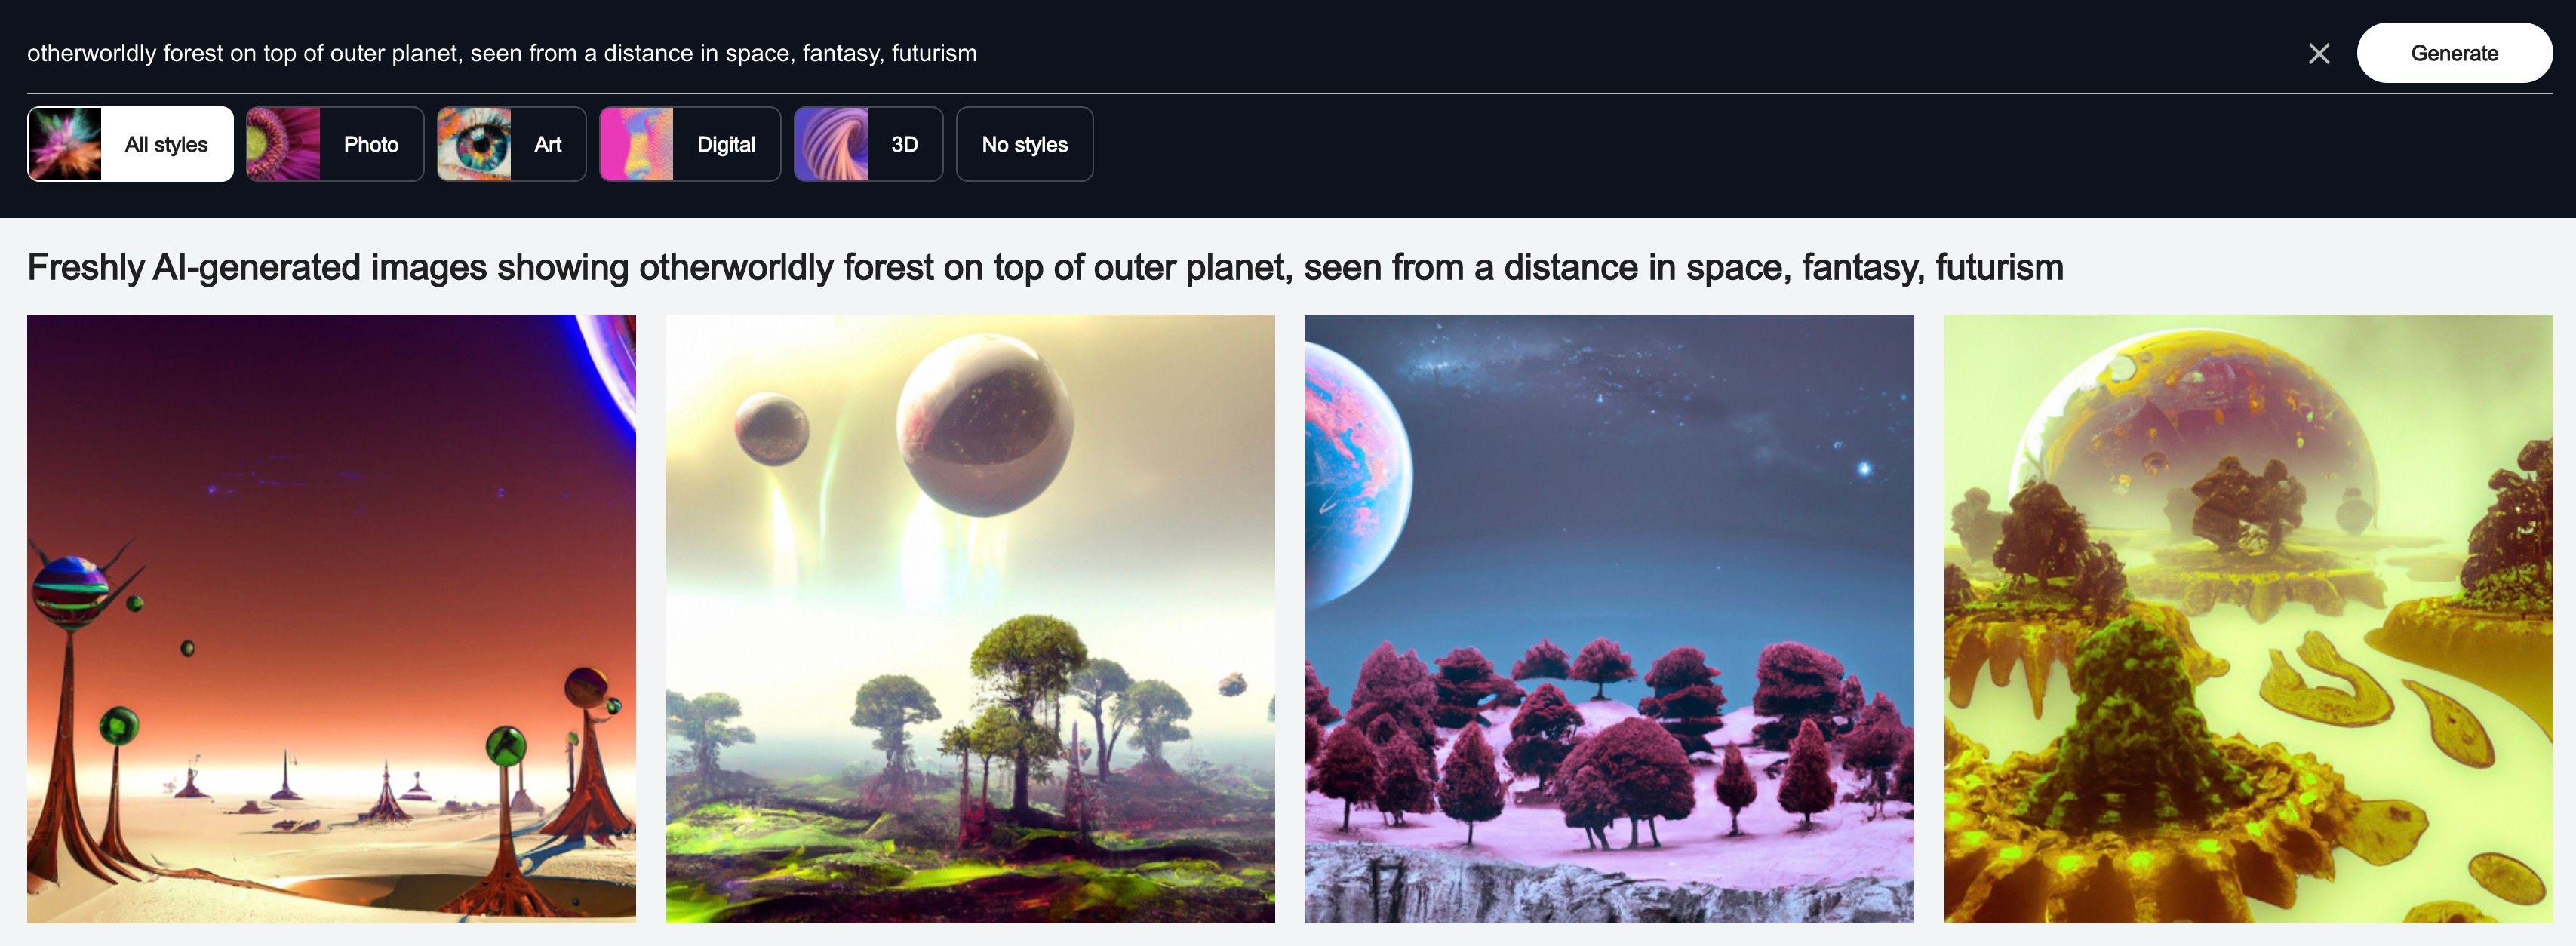 Quatre images distinctes de forêts futuristes générées avec l'IA